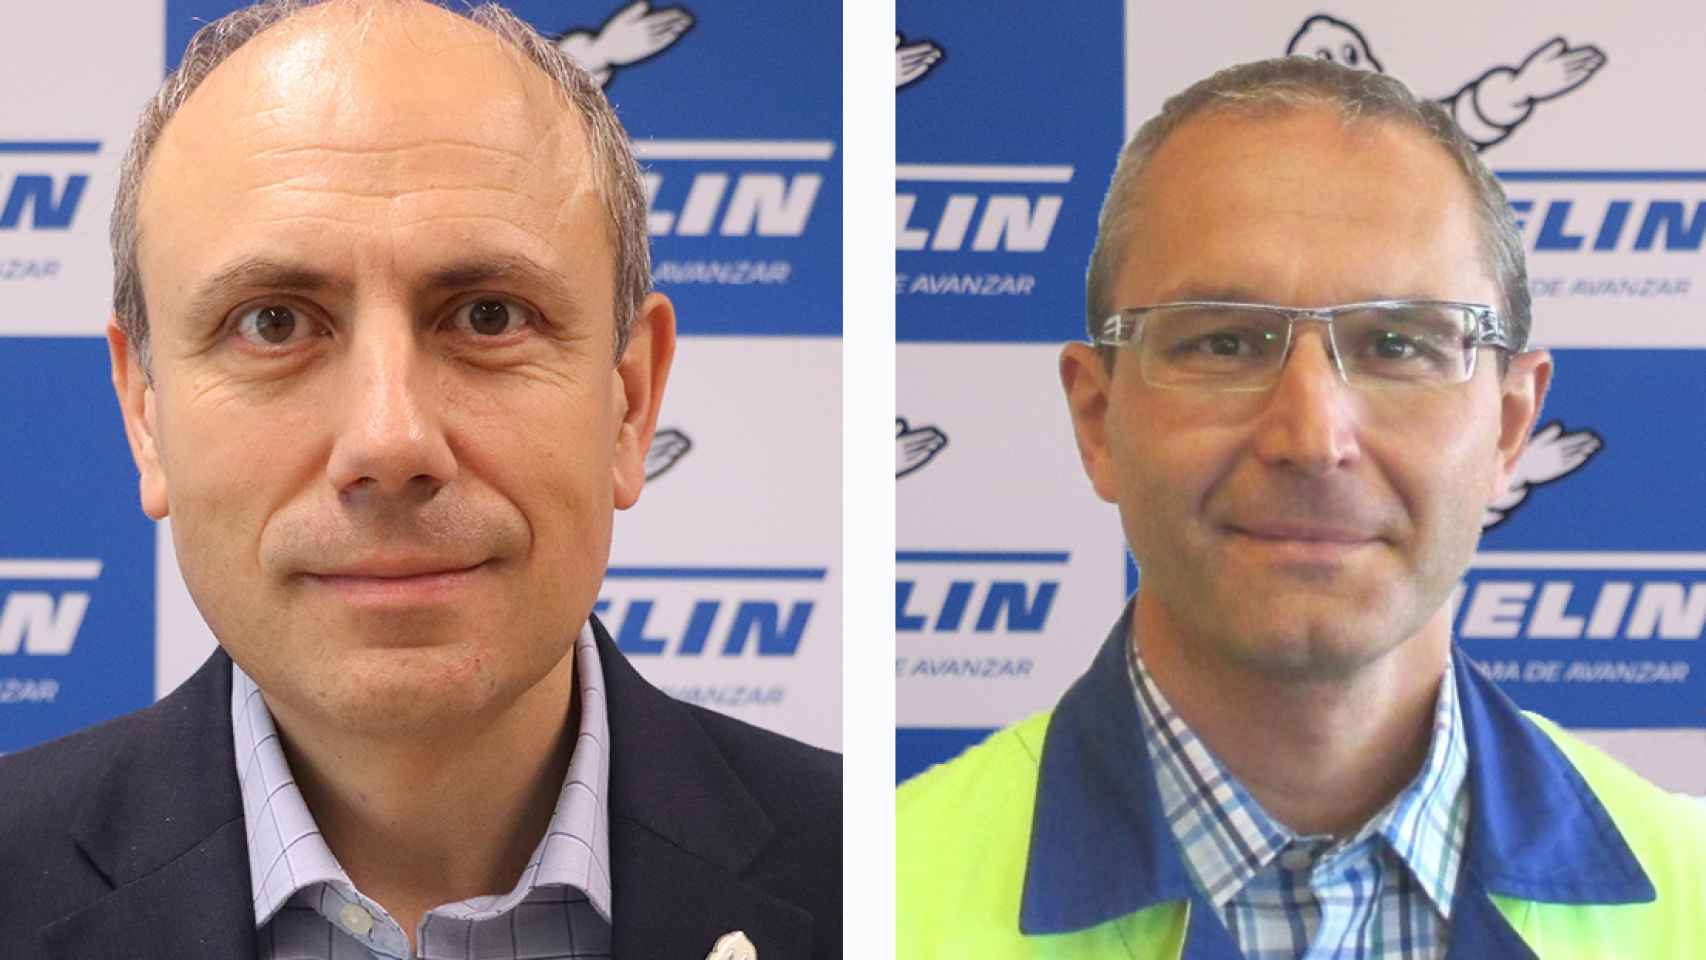 César Moñux, nuevo director de Michelin en Vitoria (I), y Carlos Abril, nuevo director de la de Aranda de Duero